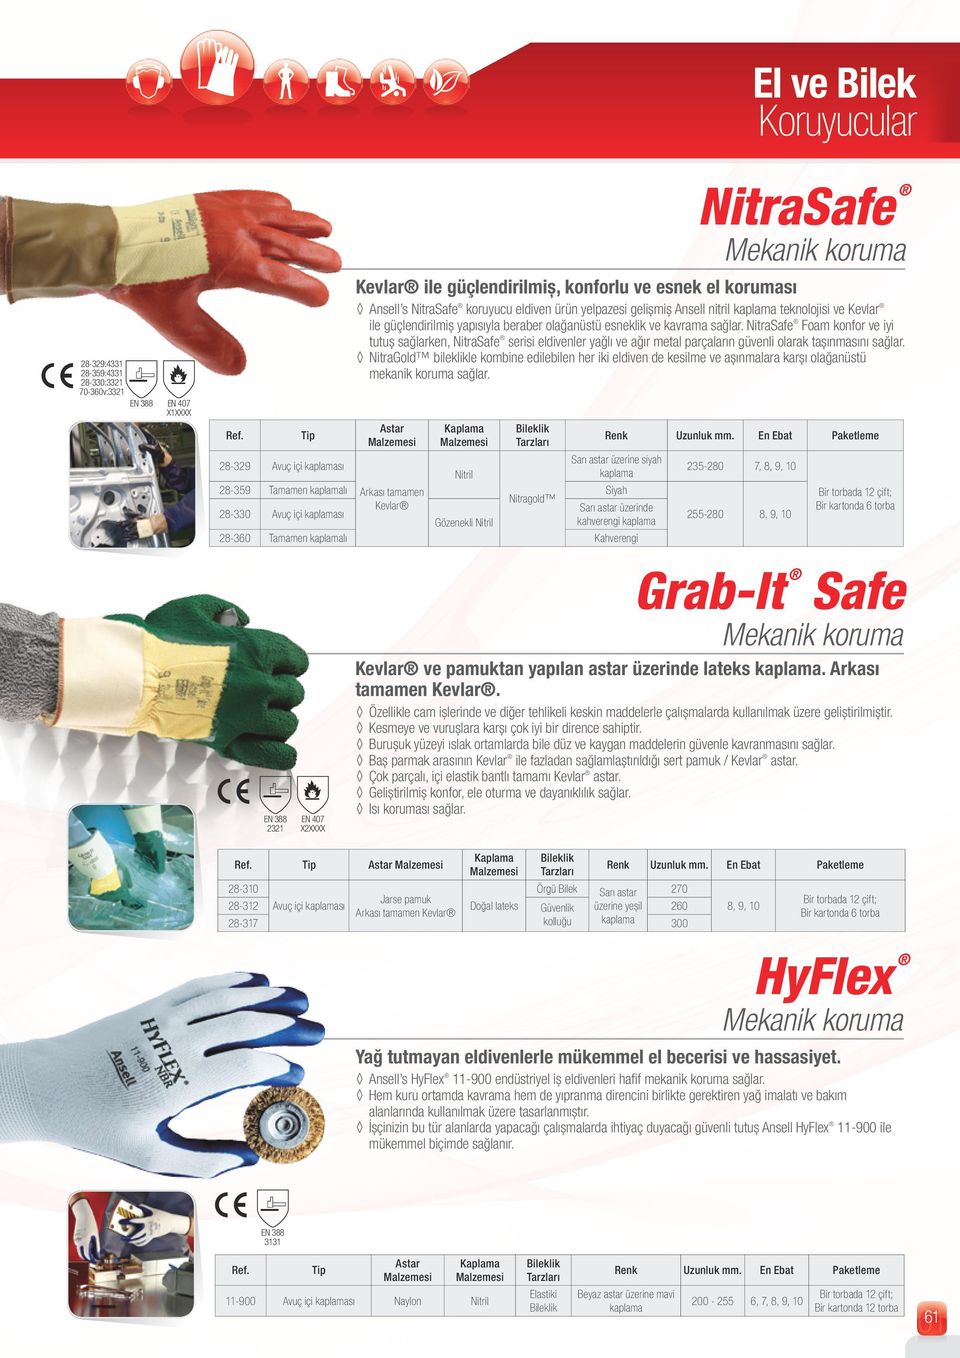 NitraSafe Foam konfor ve iyi tutuş sağlarken, NitraSafe serisi eldivenler yağlı ve ağır metal parçaların güvenli olarak taşınmasını sağlar.